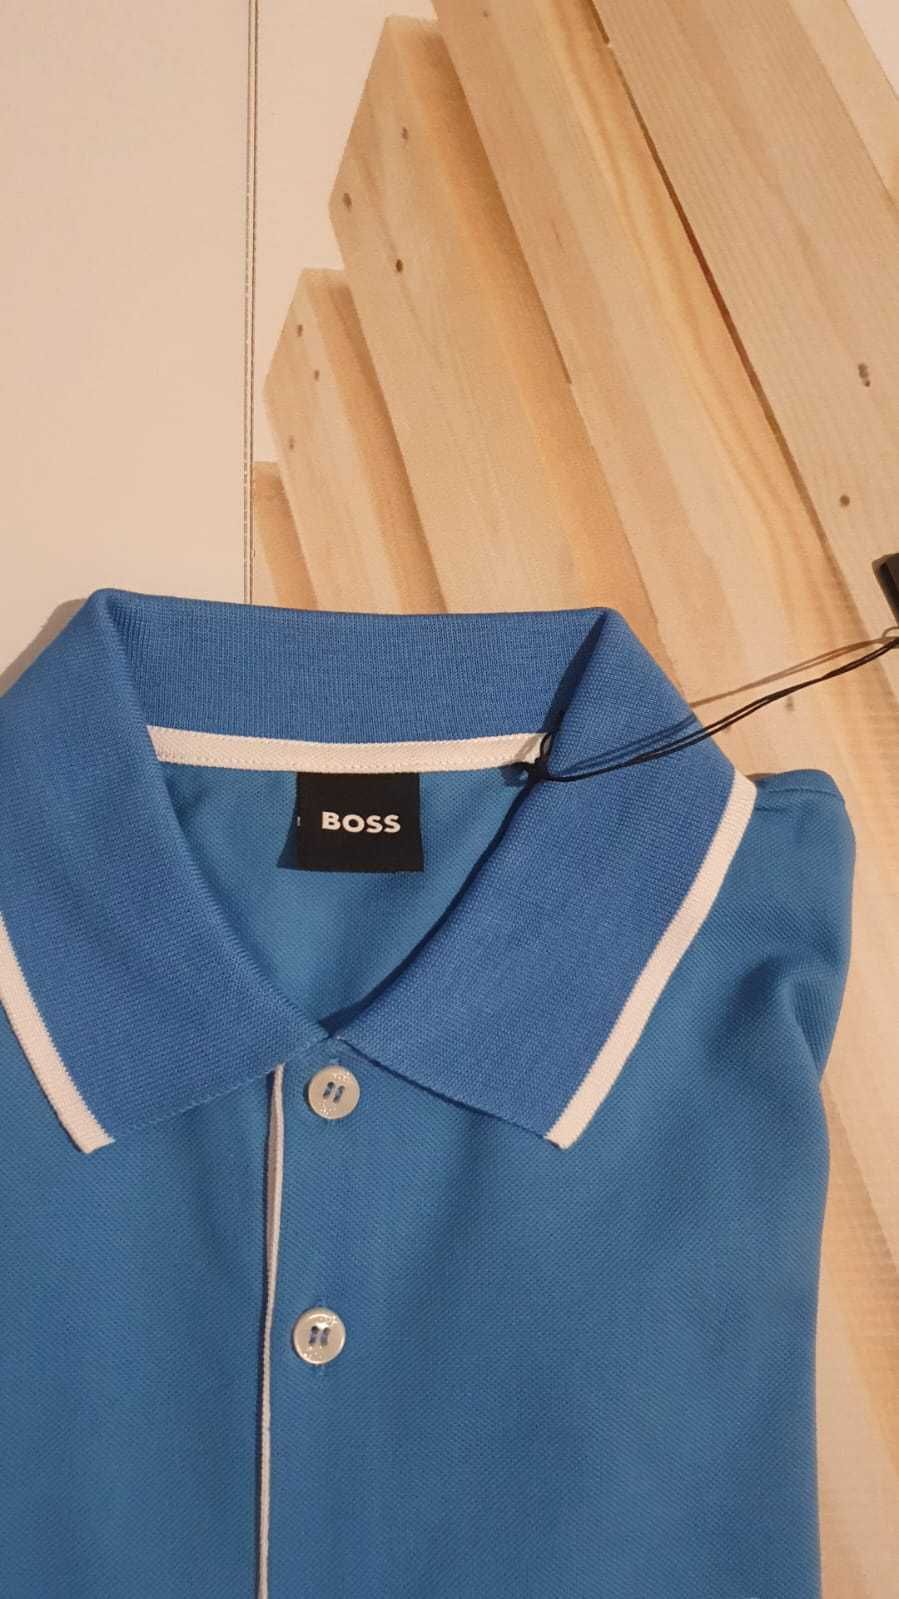 Vand tricou barbati Hugo Boss masura  M   original nou cu eticheta